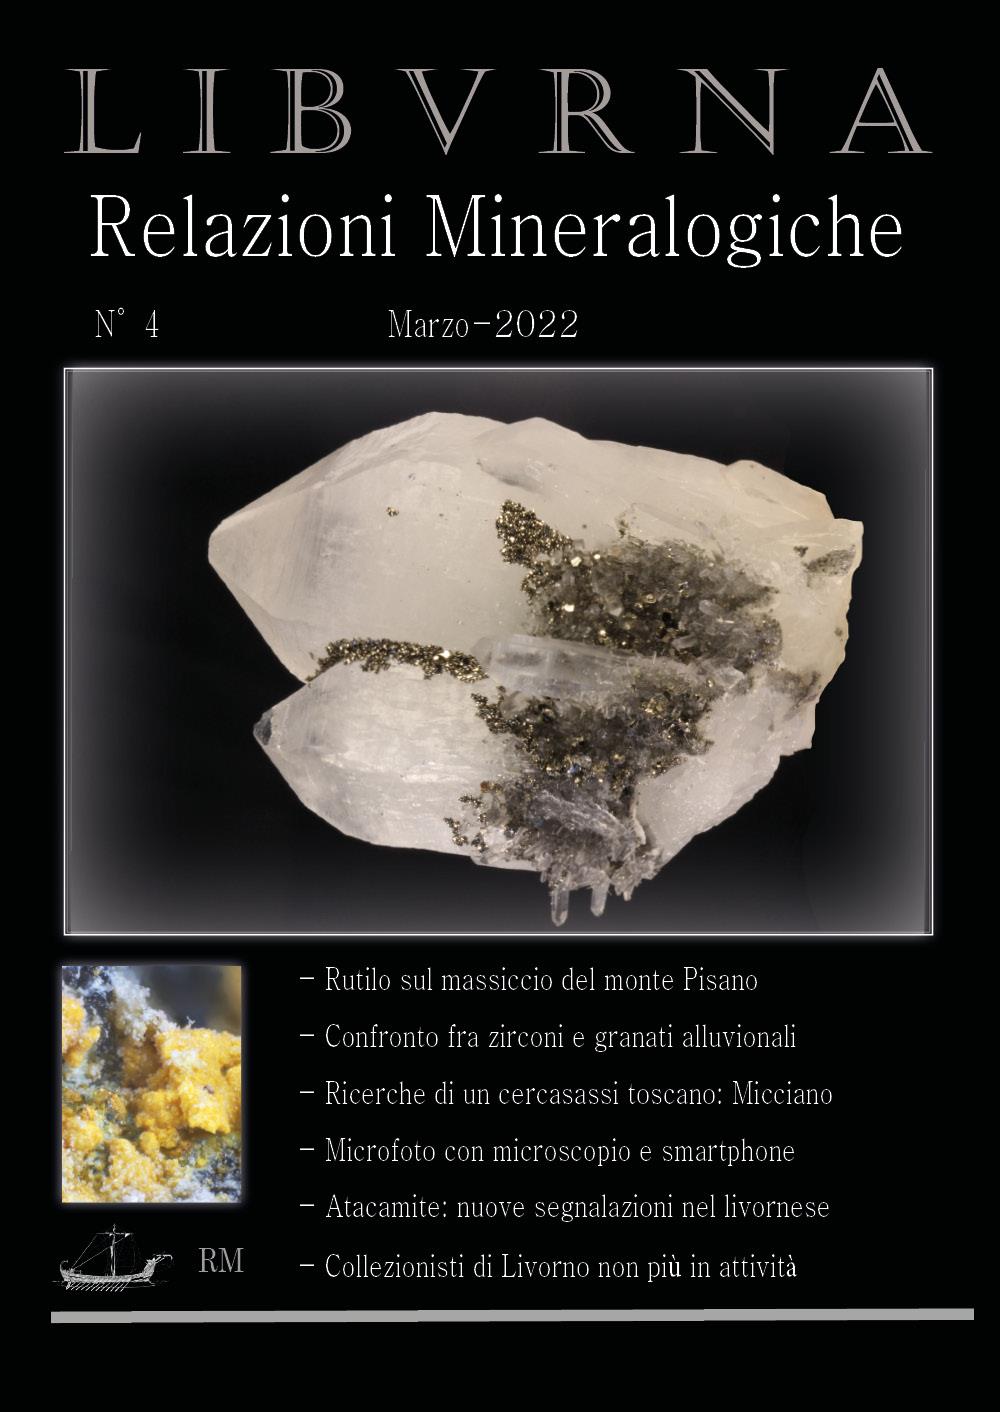 LIBVRNA N°4, Marzo 2022, Relazioni mineralogiche